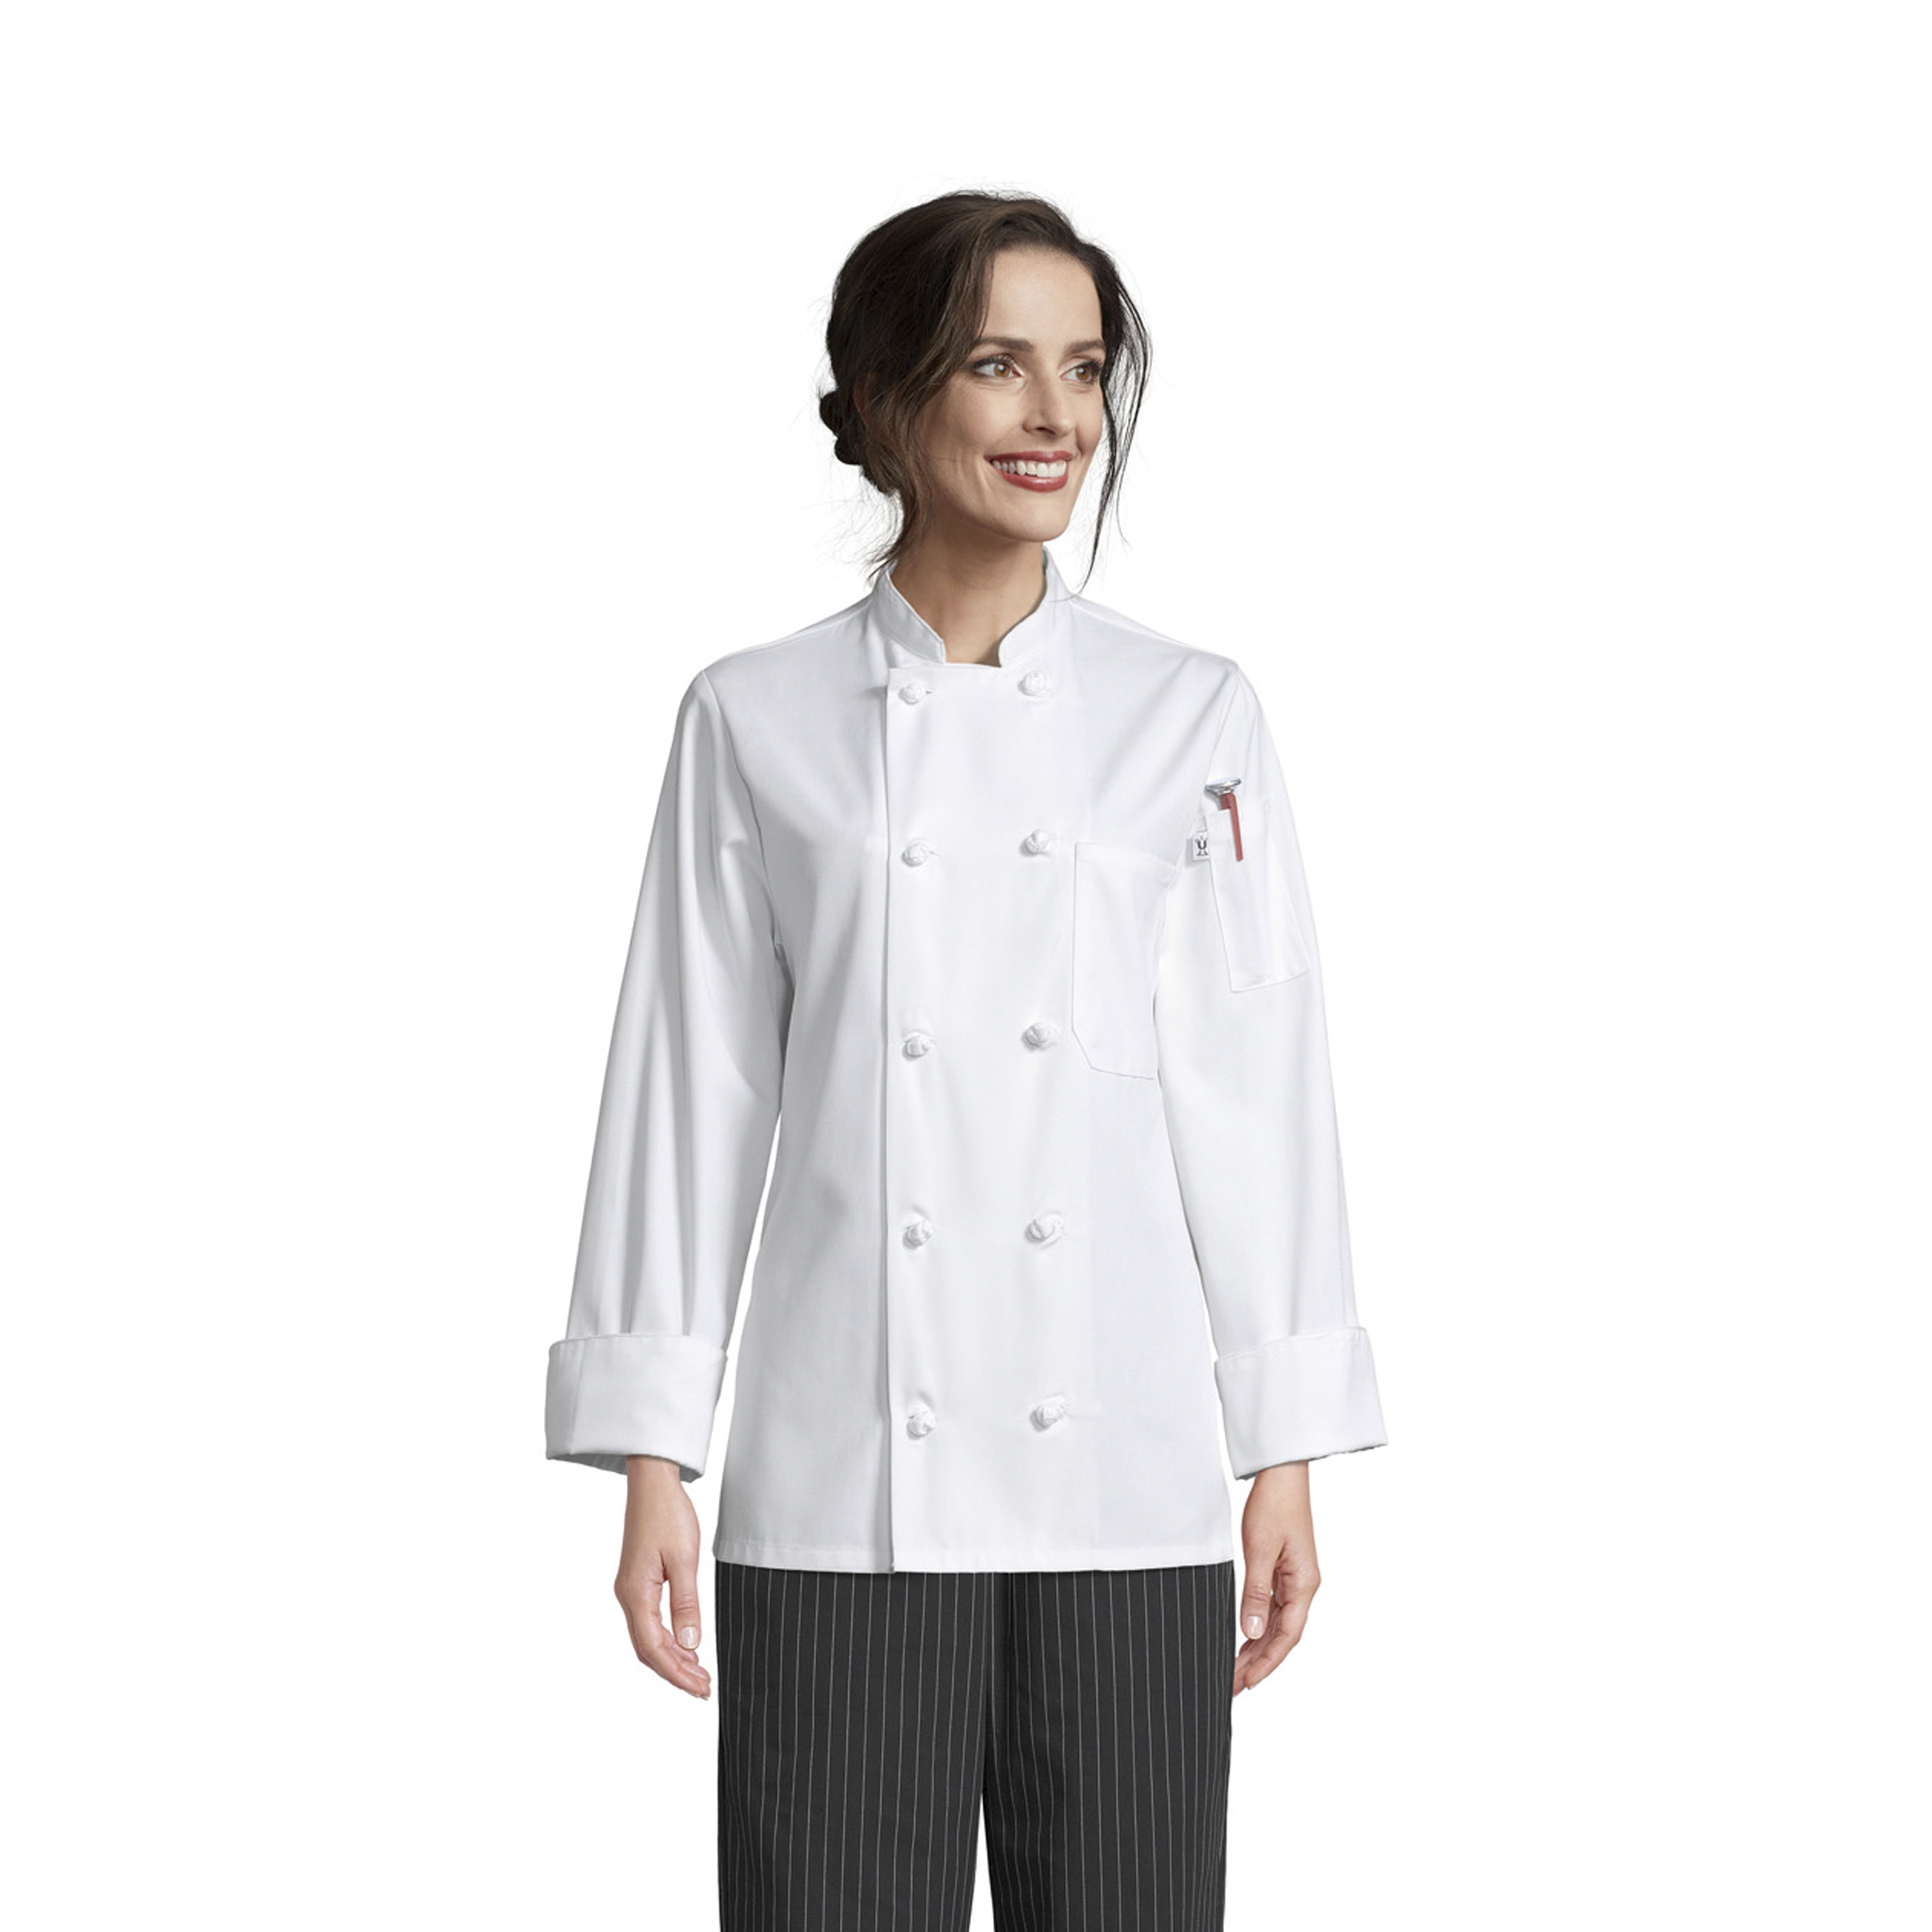 0490 Sedona Chef Coat